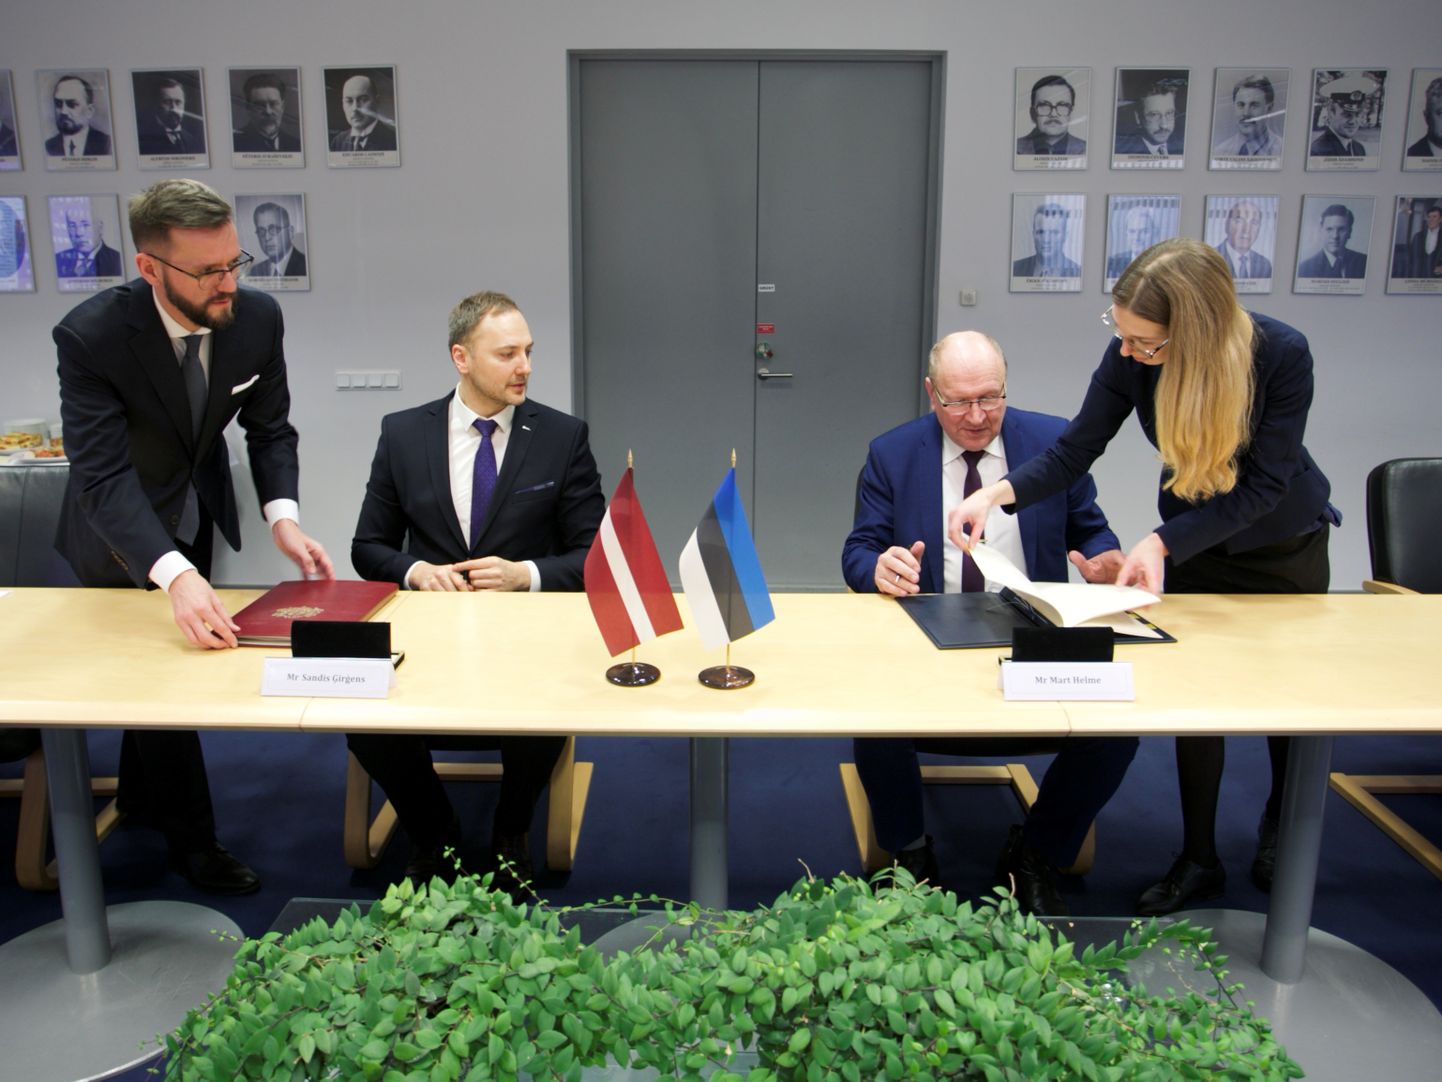 Läti siseminister Sandis Ģirģens ja Eesti siseminister Mart Helme allkirjastasid täna, 19. veebruaril Eesti-Läti piiri hoolduse kokkuleppe.